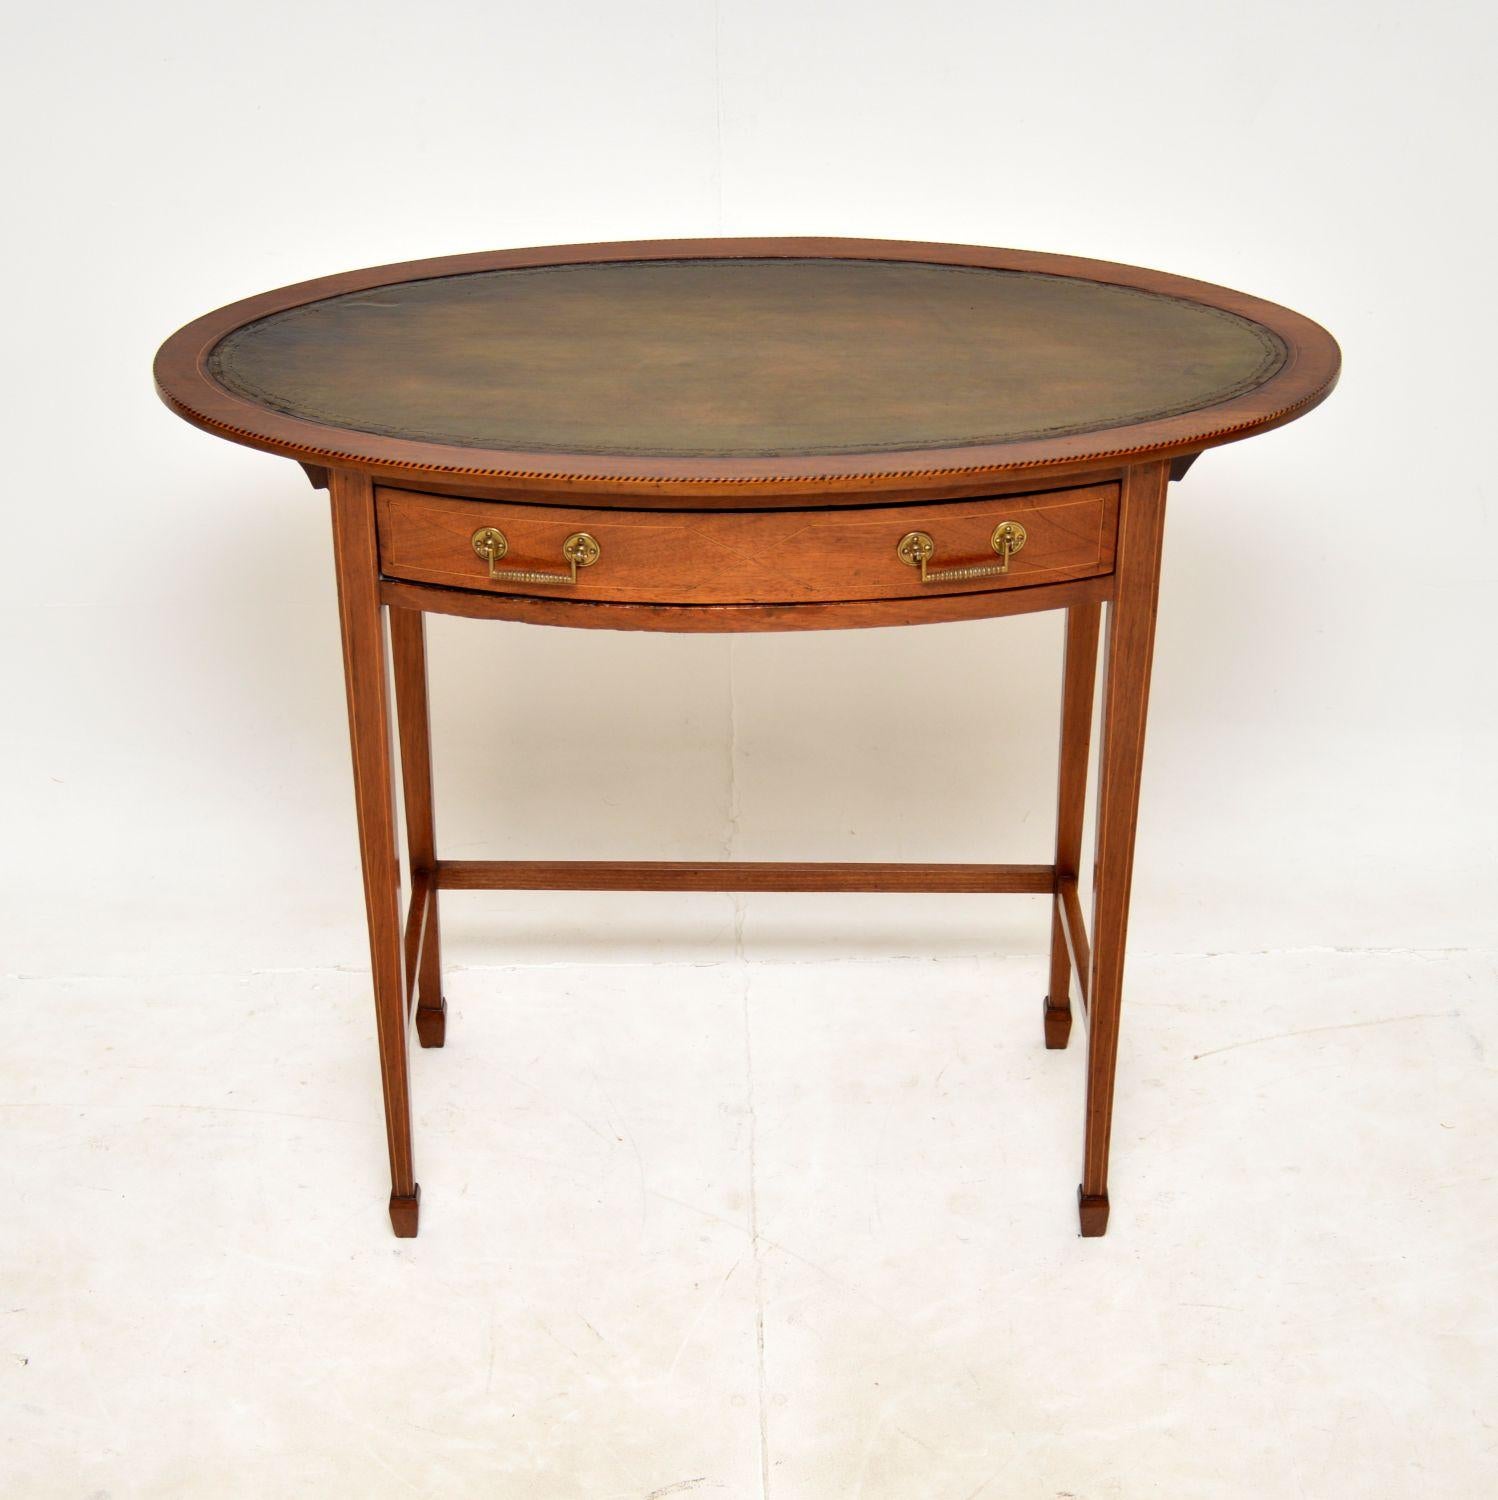 Une belle et assez inhabituelle table d'écriture en cuir de l'époque édouardienne. Fabriqué en Angleterre, il date d'environ 1890-1900.

Il est très bien fait et d'une taille utile. La partie supérieure ovale a une surface d'écriture en cuir vert